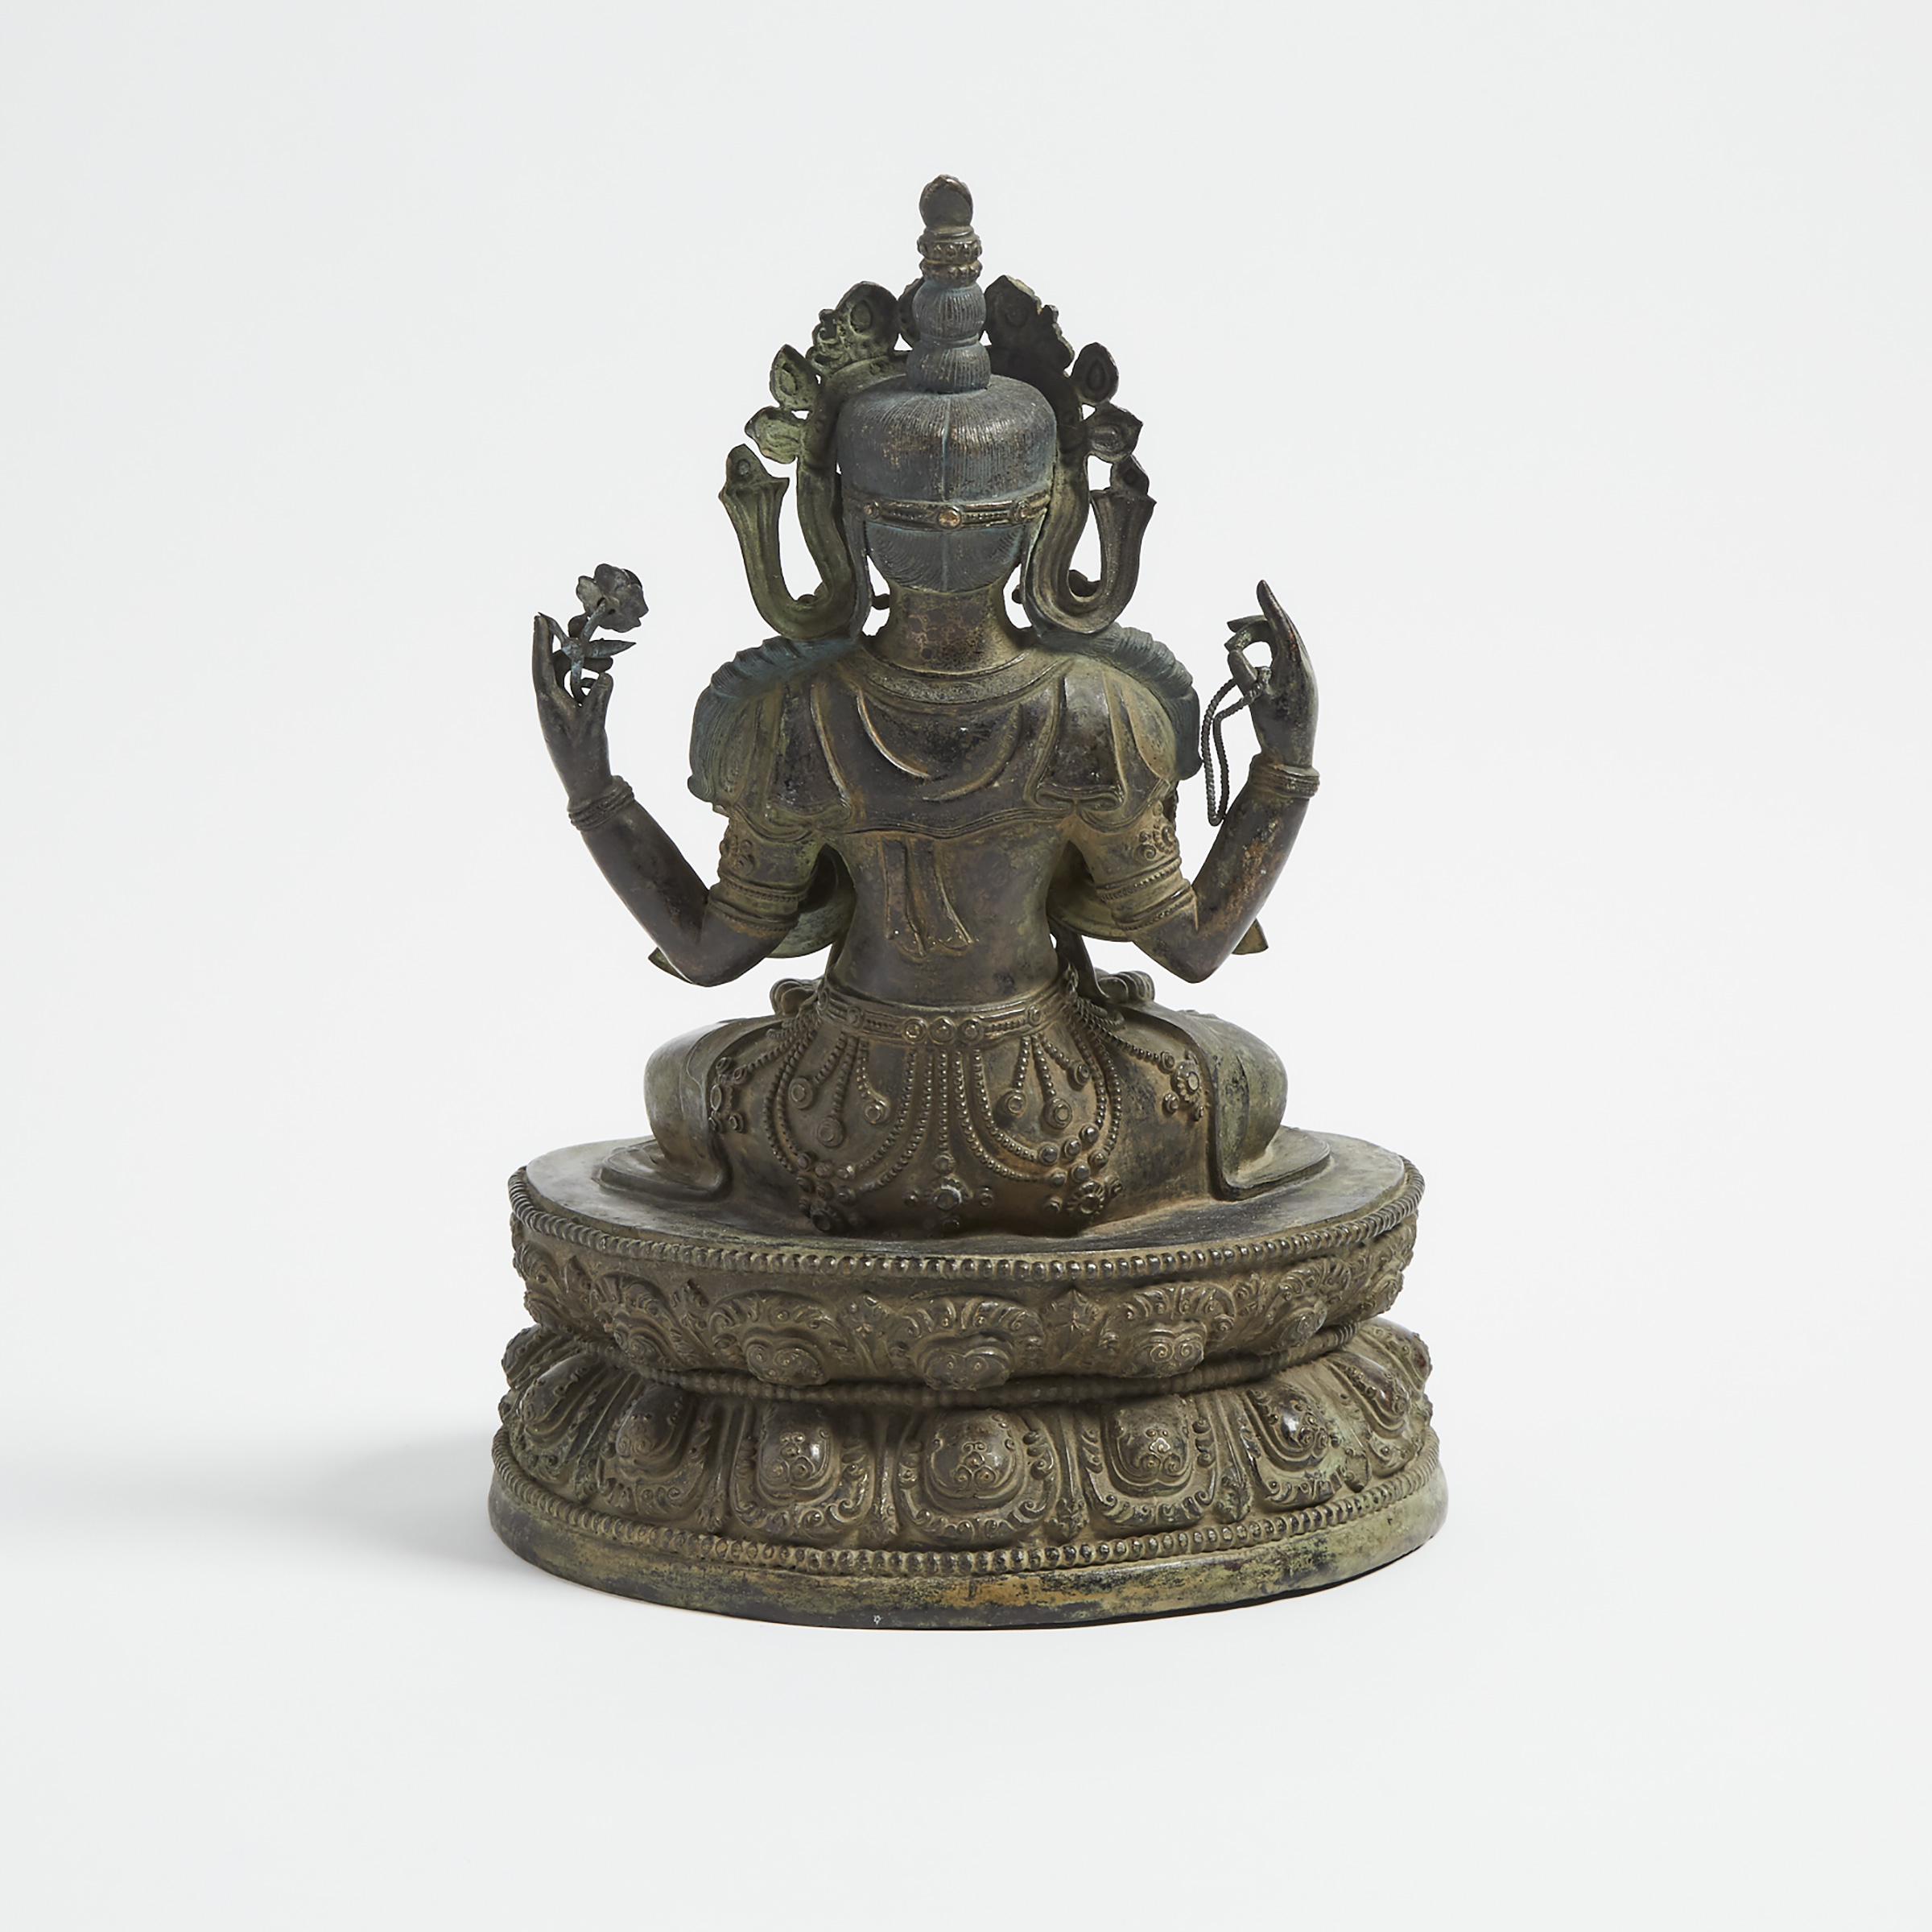 A Sino-Tibetan Bronze Seated Figure of Shadakshari Lokeshvara Buddha, 18th Century or Later